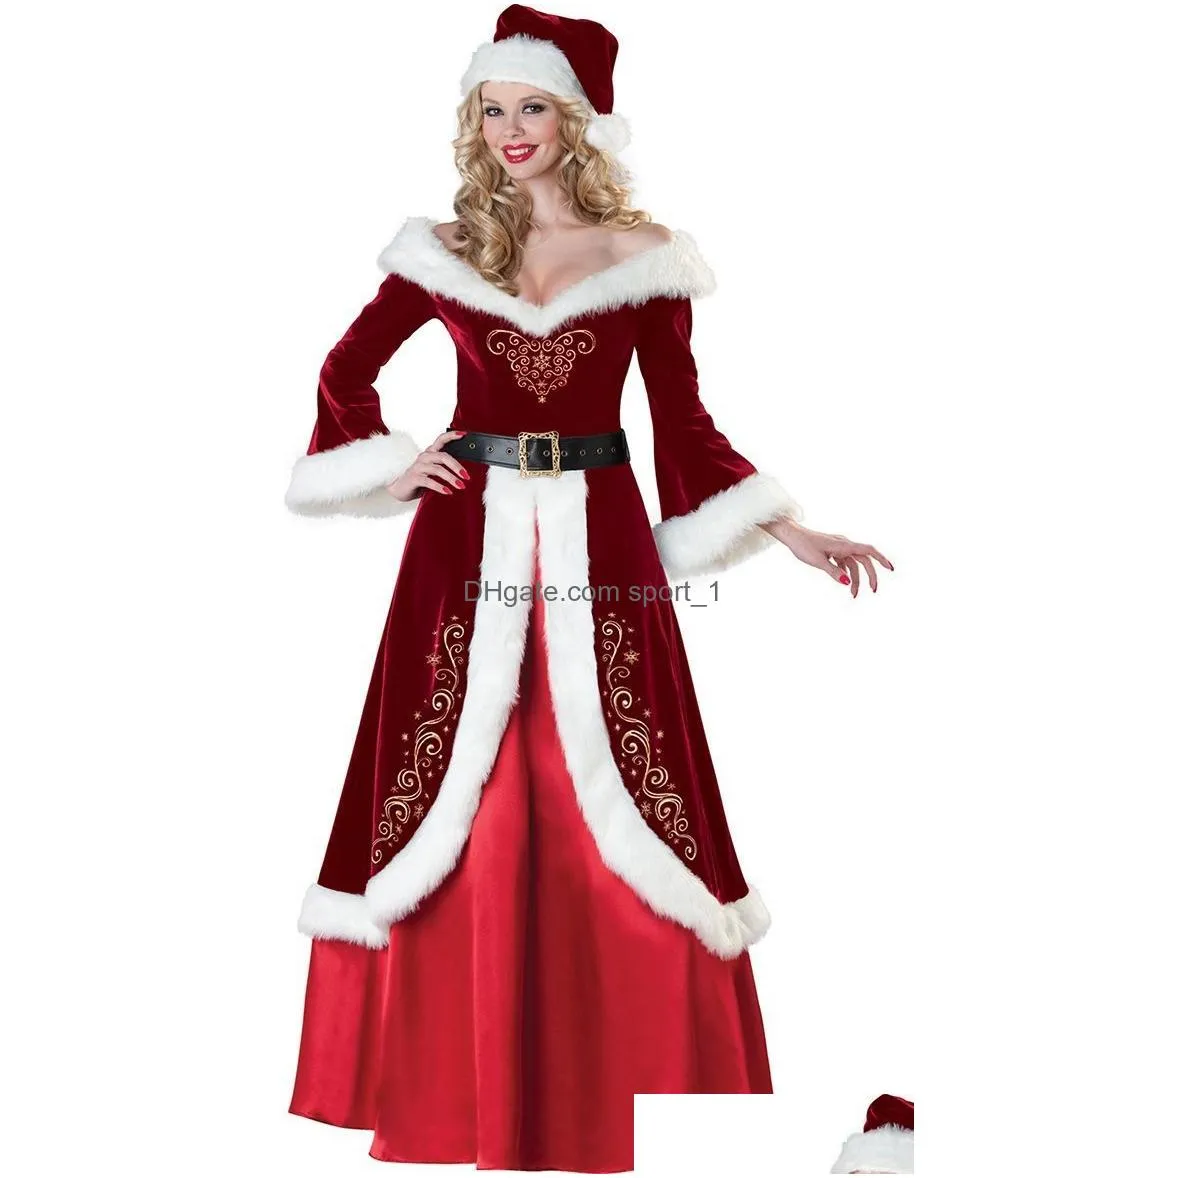  christmas decorations velvet men/women santa claus costume suit couple party costume for xmas wholesale